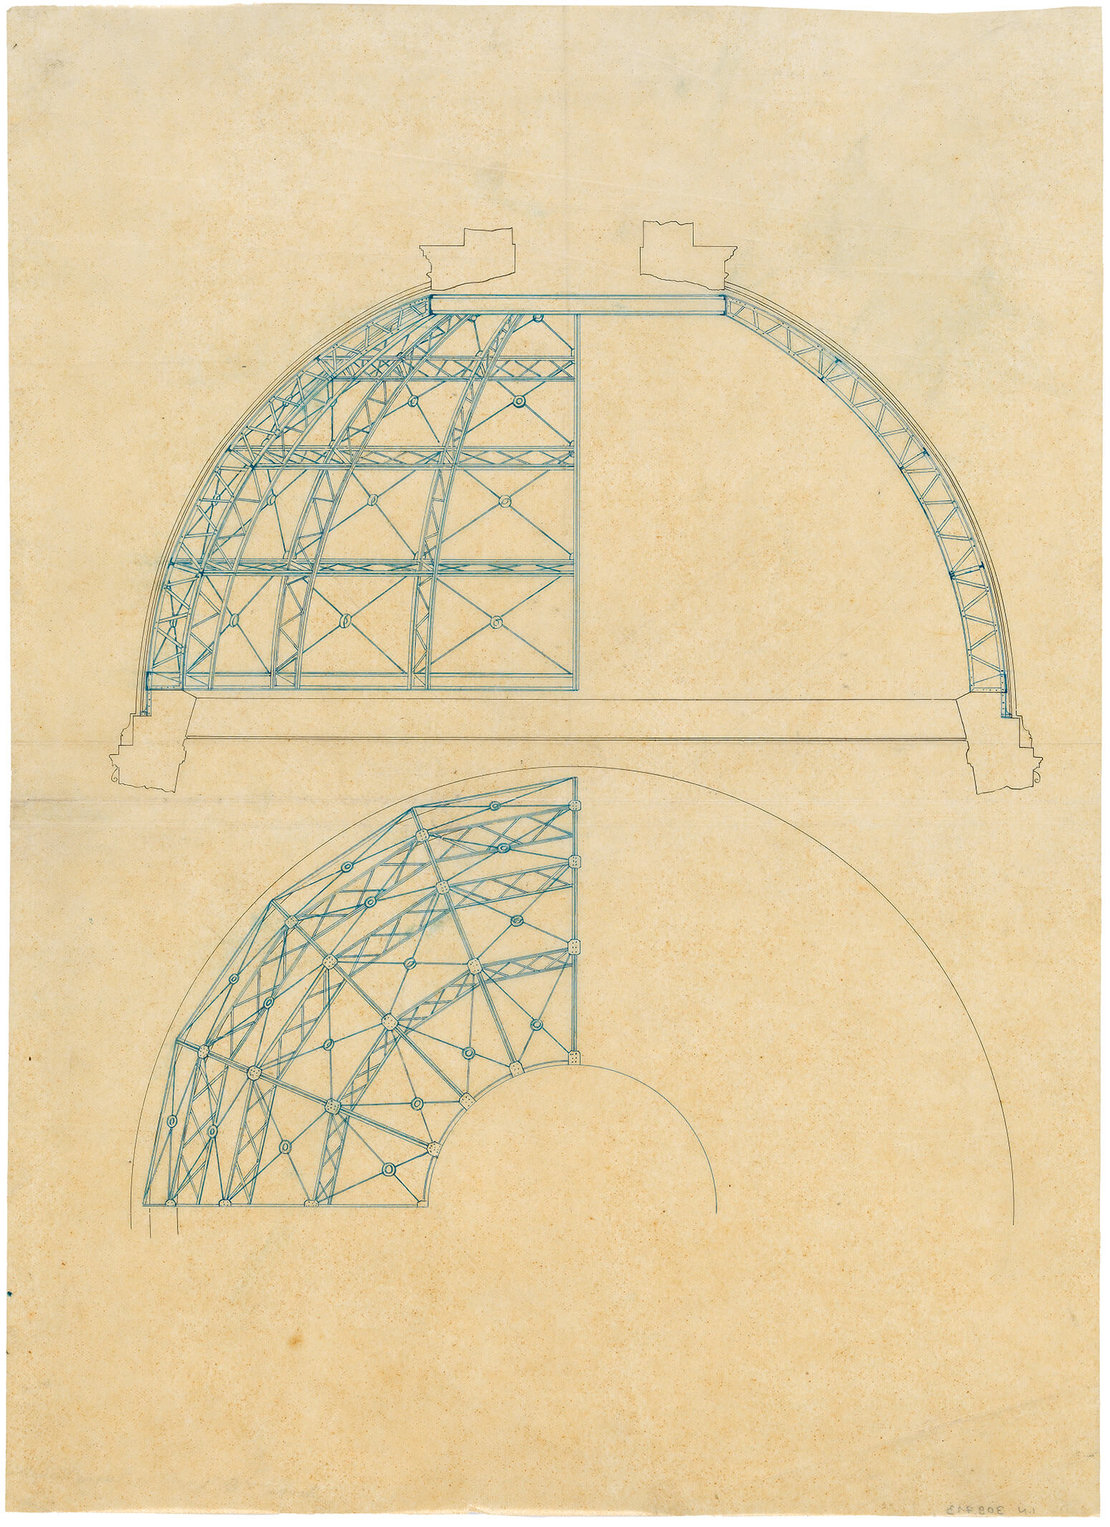 Otto Wagner: Draufsicht und Schnitt einer eisernen Kuppelkonstruktion, um 1880, Feder, 38 x 27,5 cm, Wien Museum 